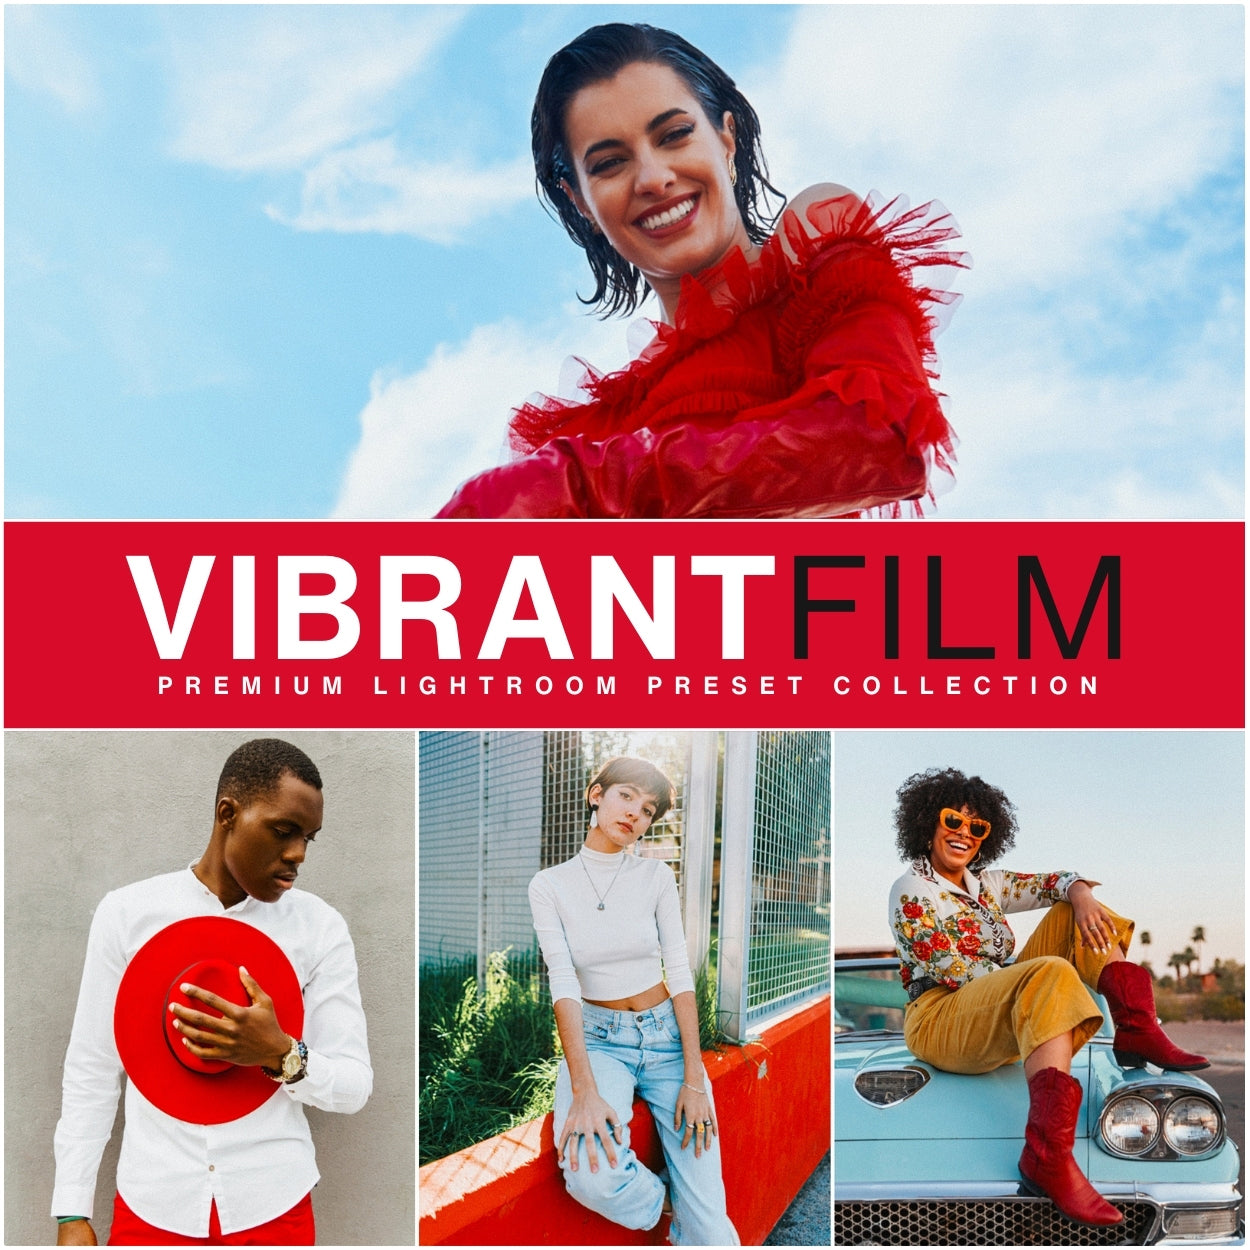 Vibrant Film Filter Lightroom Presets For Adobe Lightroom Mobile & Desktop By Lou And Marks Presets